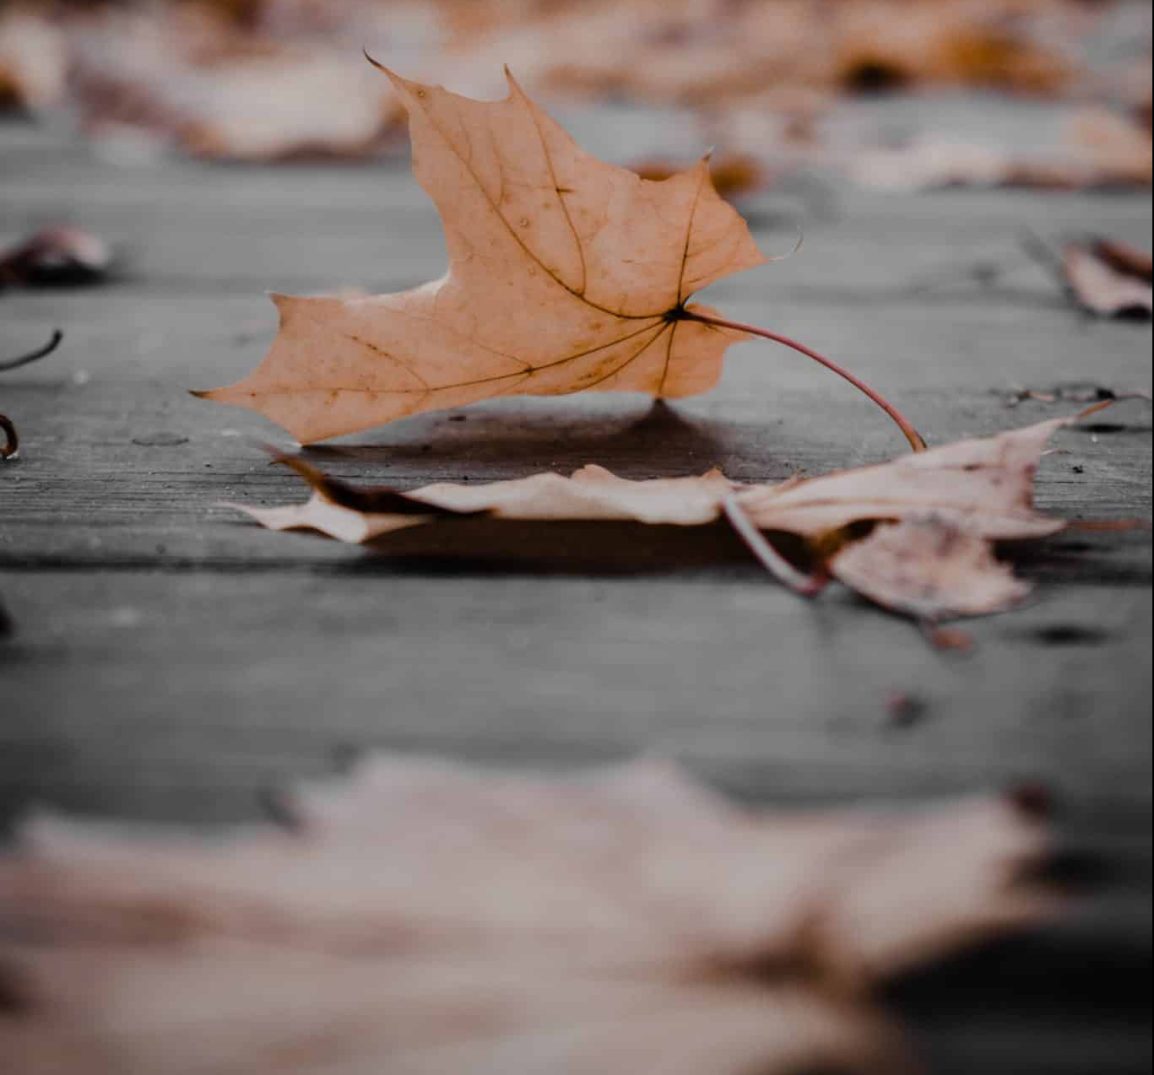 A Fallen leaf